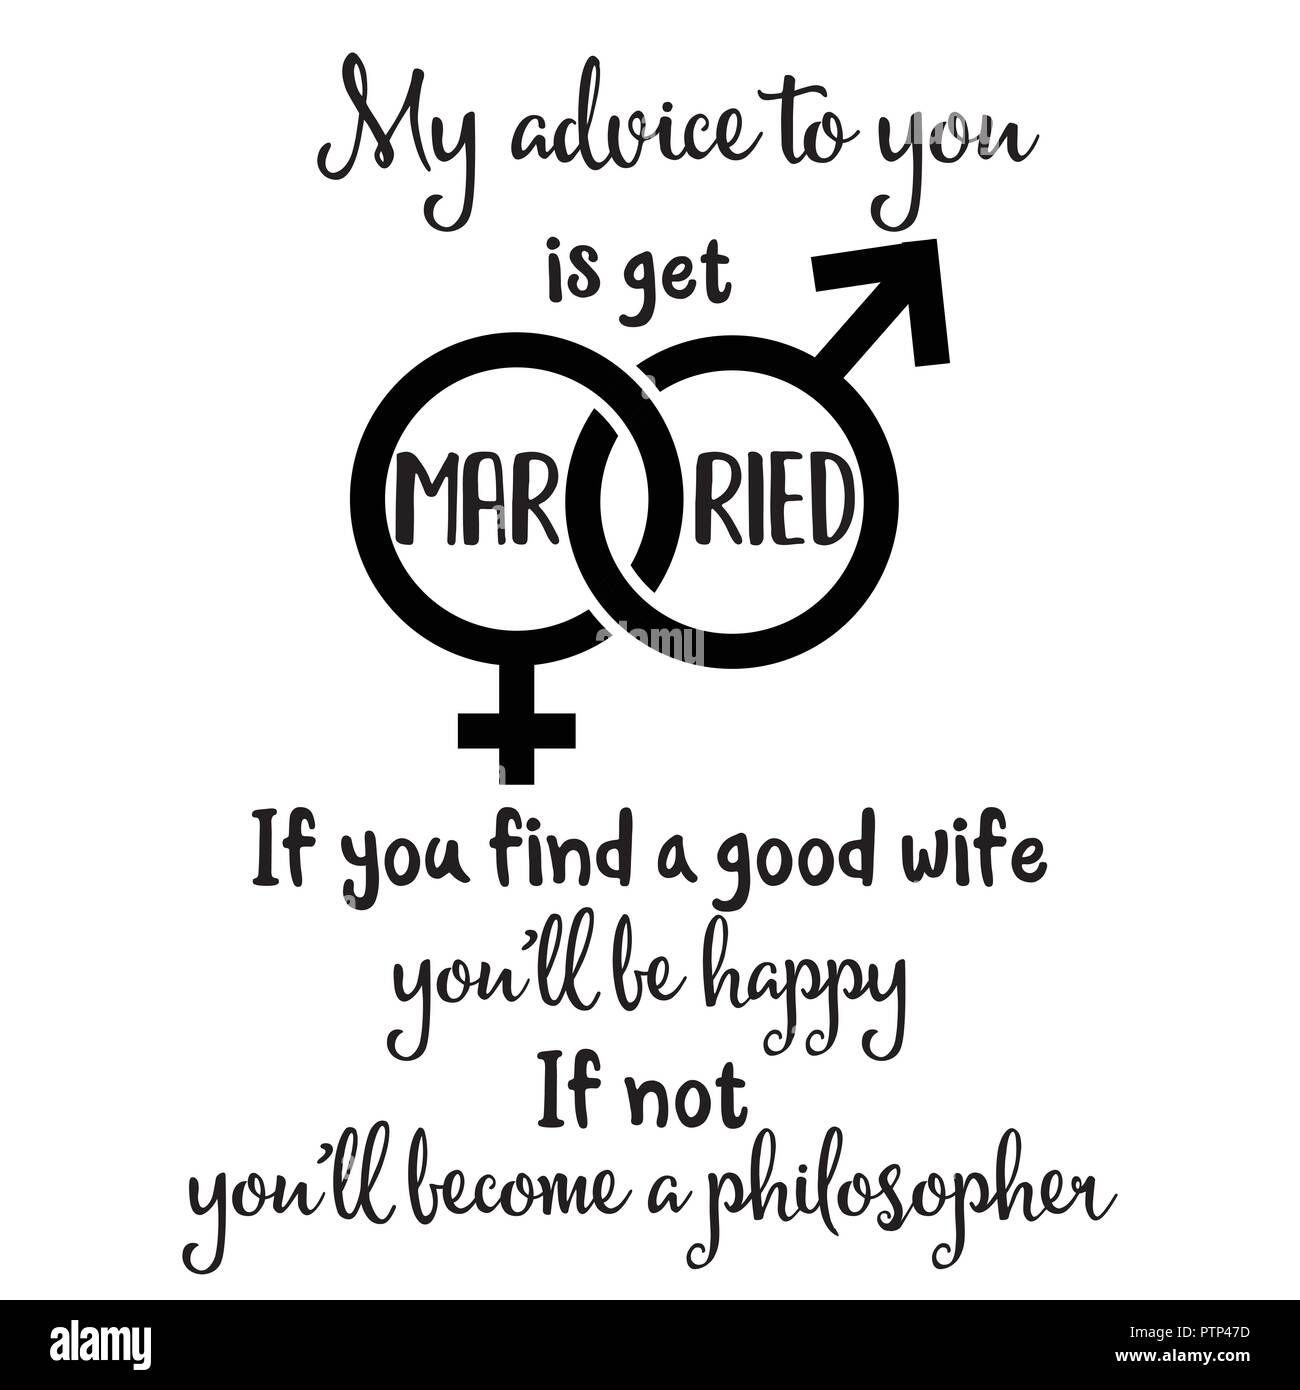 Mein Rat an Sie ist verheiratet. Wenn Sie eine gute Frau fing sie glücklich, wenn Sie nicht ein Philosoph" geworden. Lustig Zitat über die Ehe Stock Vektor